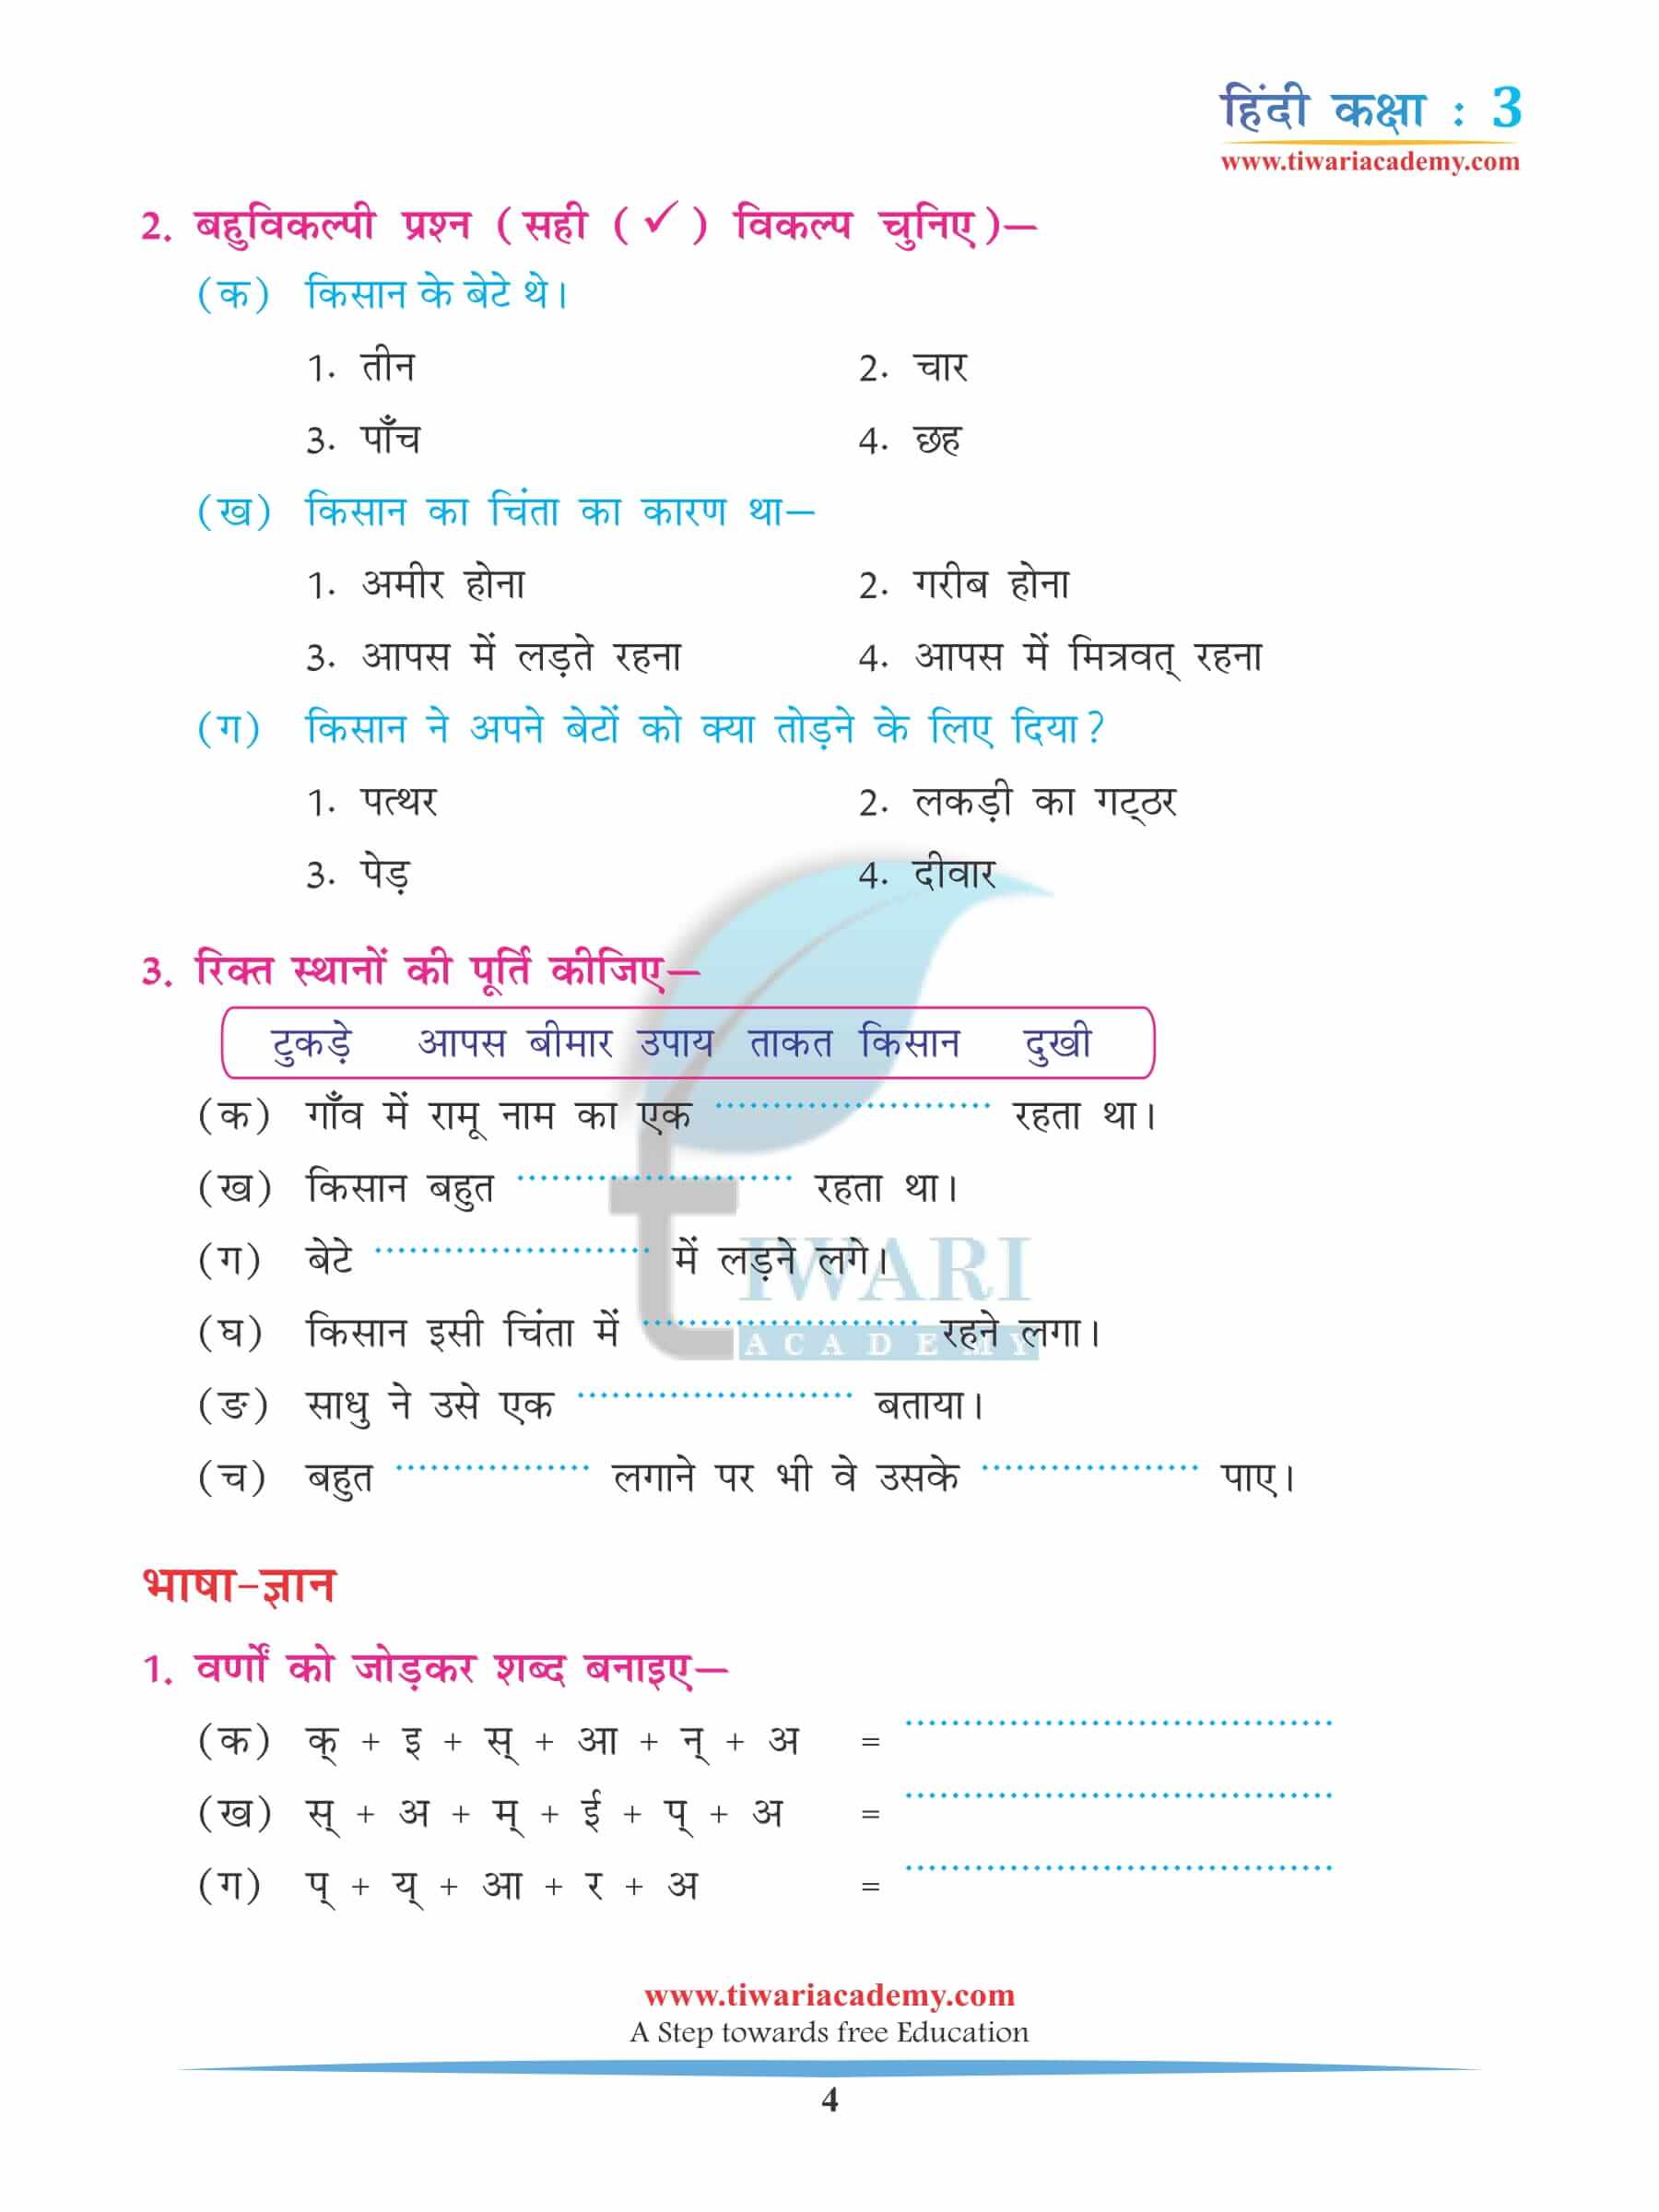 कक्षा 3 हिंदी अध्याय 3 अभ्यास के लिए पुस्तक